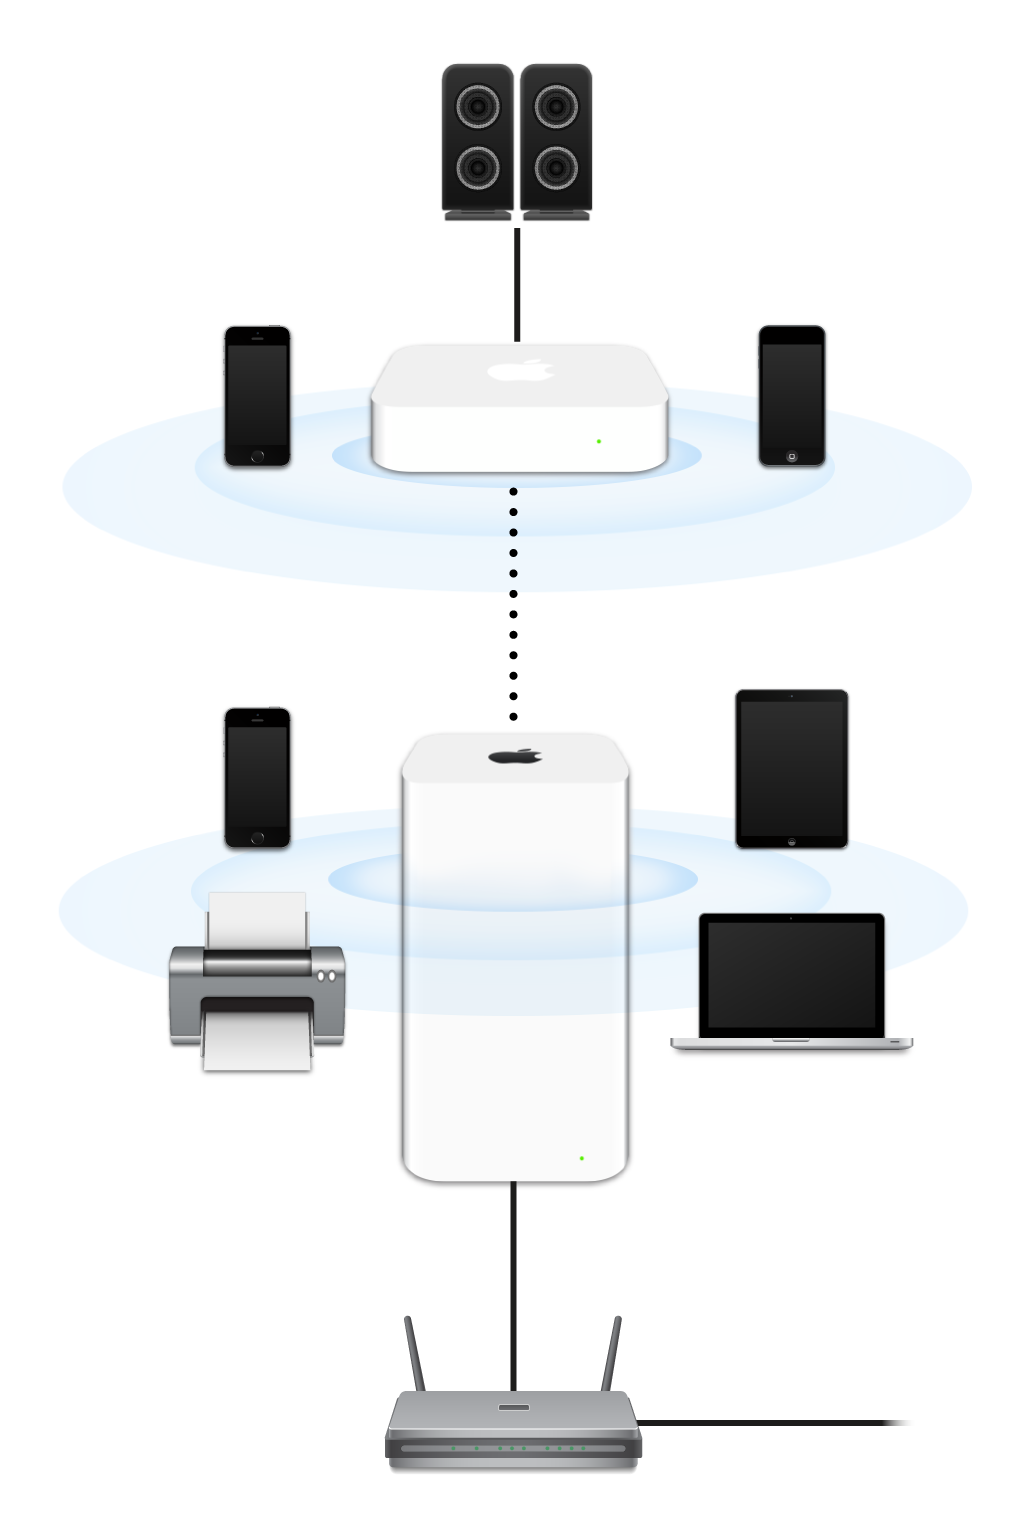 Một mạng mở rộng, bao gồm AirPort Extreme và AirPort Express, được kết nối với một modem và đang truyền đến nhiều thiết bị.